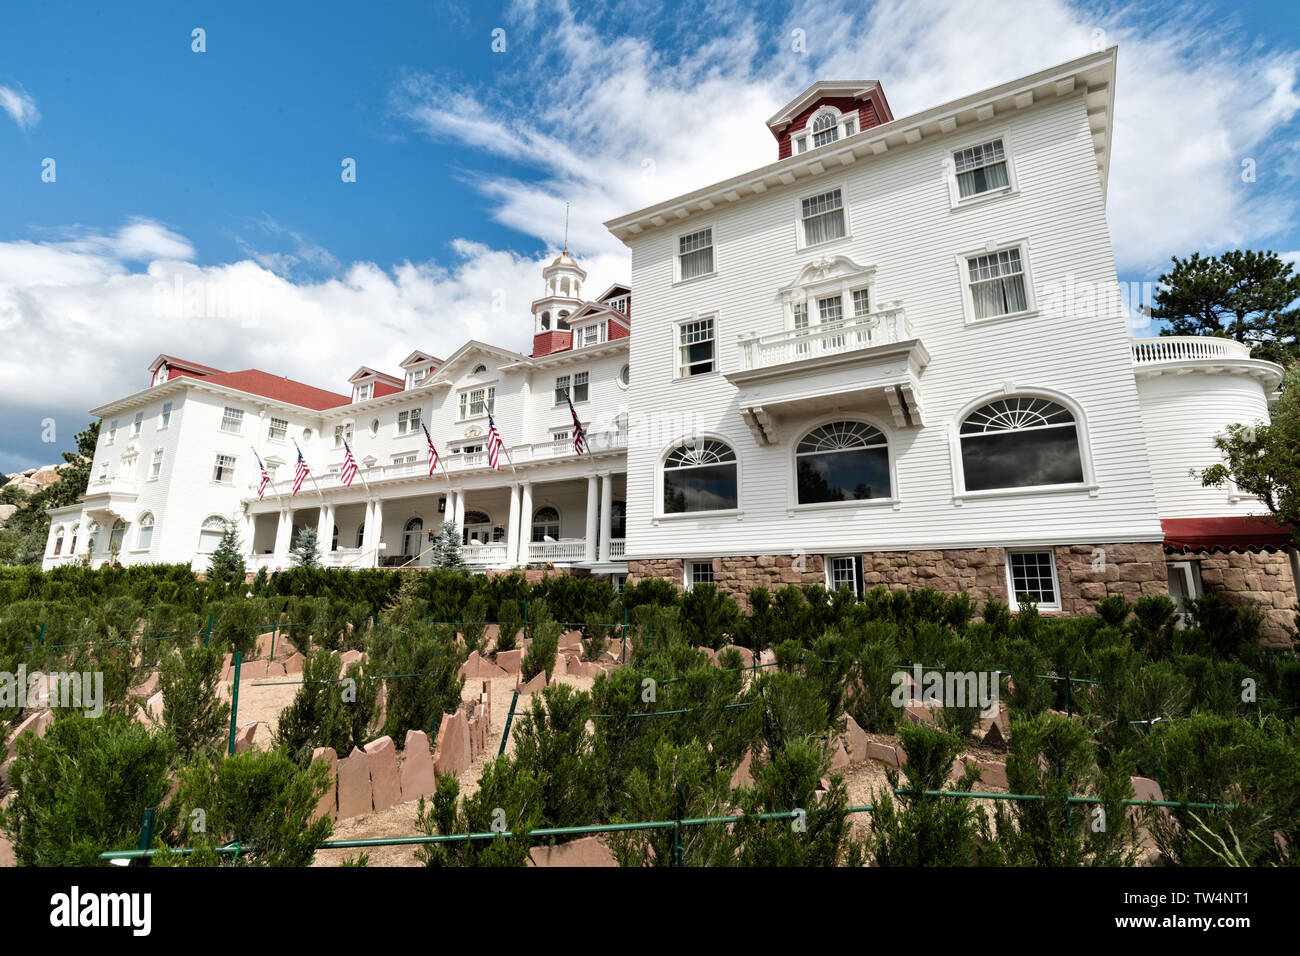 L'historique de l'Hôtel Stanley, un 142-room hotel néo-colonial construit en 1909, près de l'entrée de Rocky Mountain National Park de Estes Park, Colorado. L'hôtel inspiré de l'hôtel donnent sur dans le roman de Stephen King The Shining. Banque D'Images